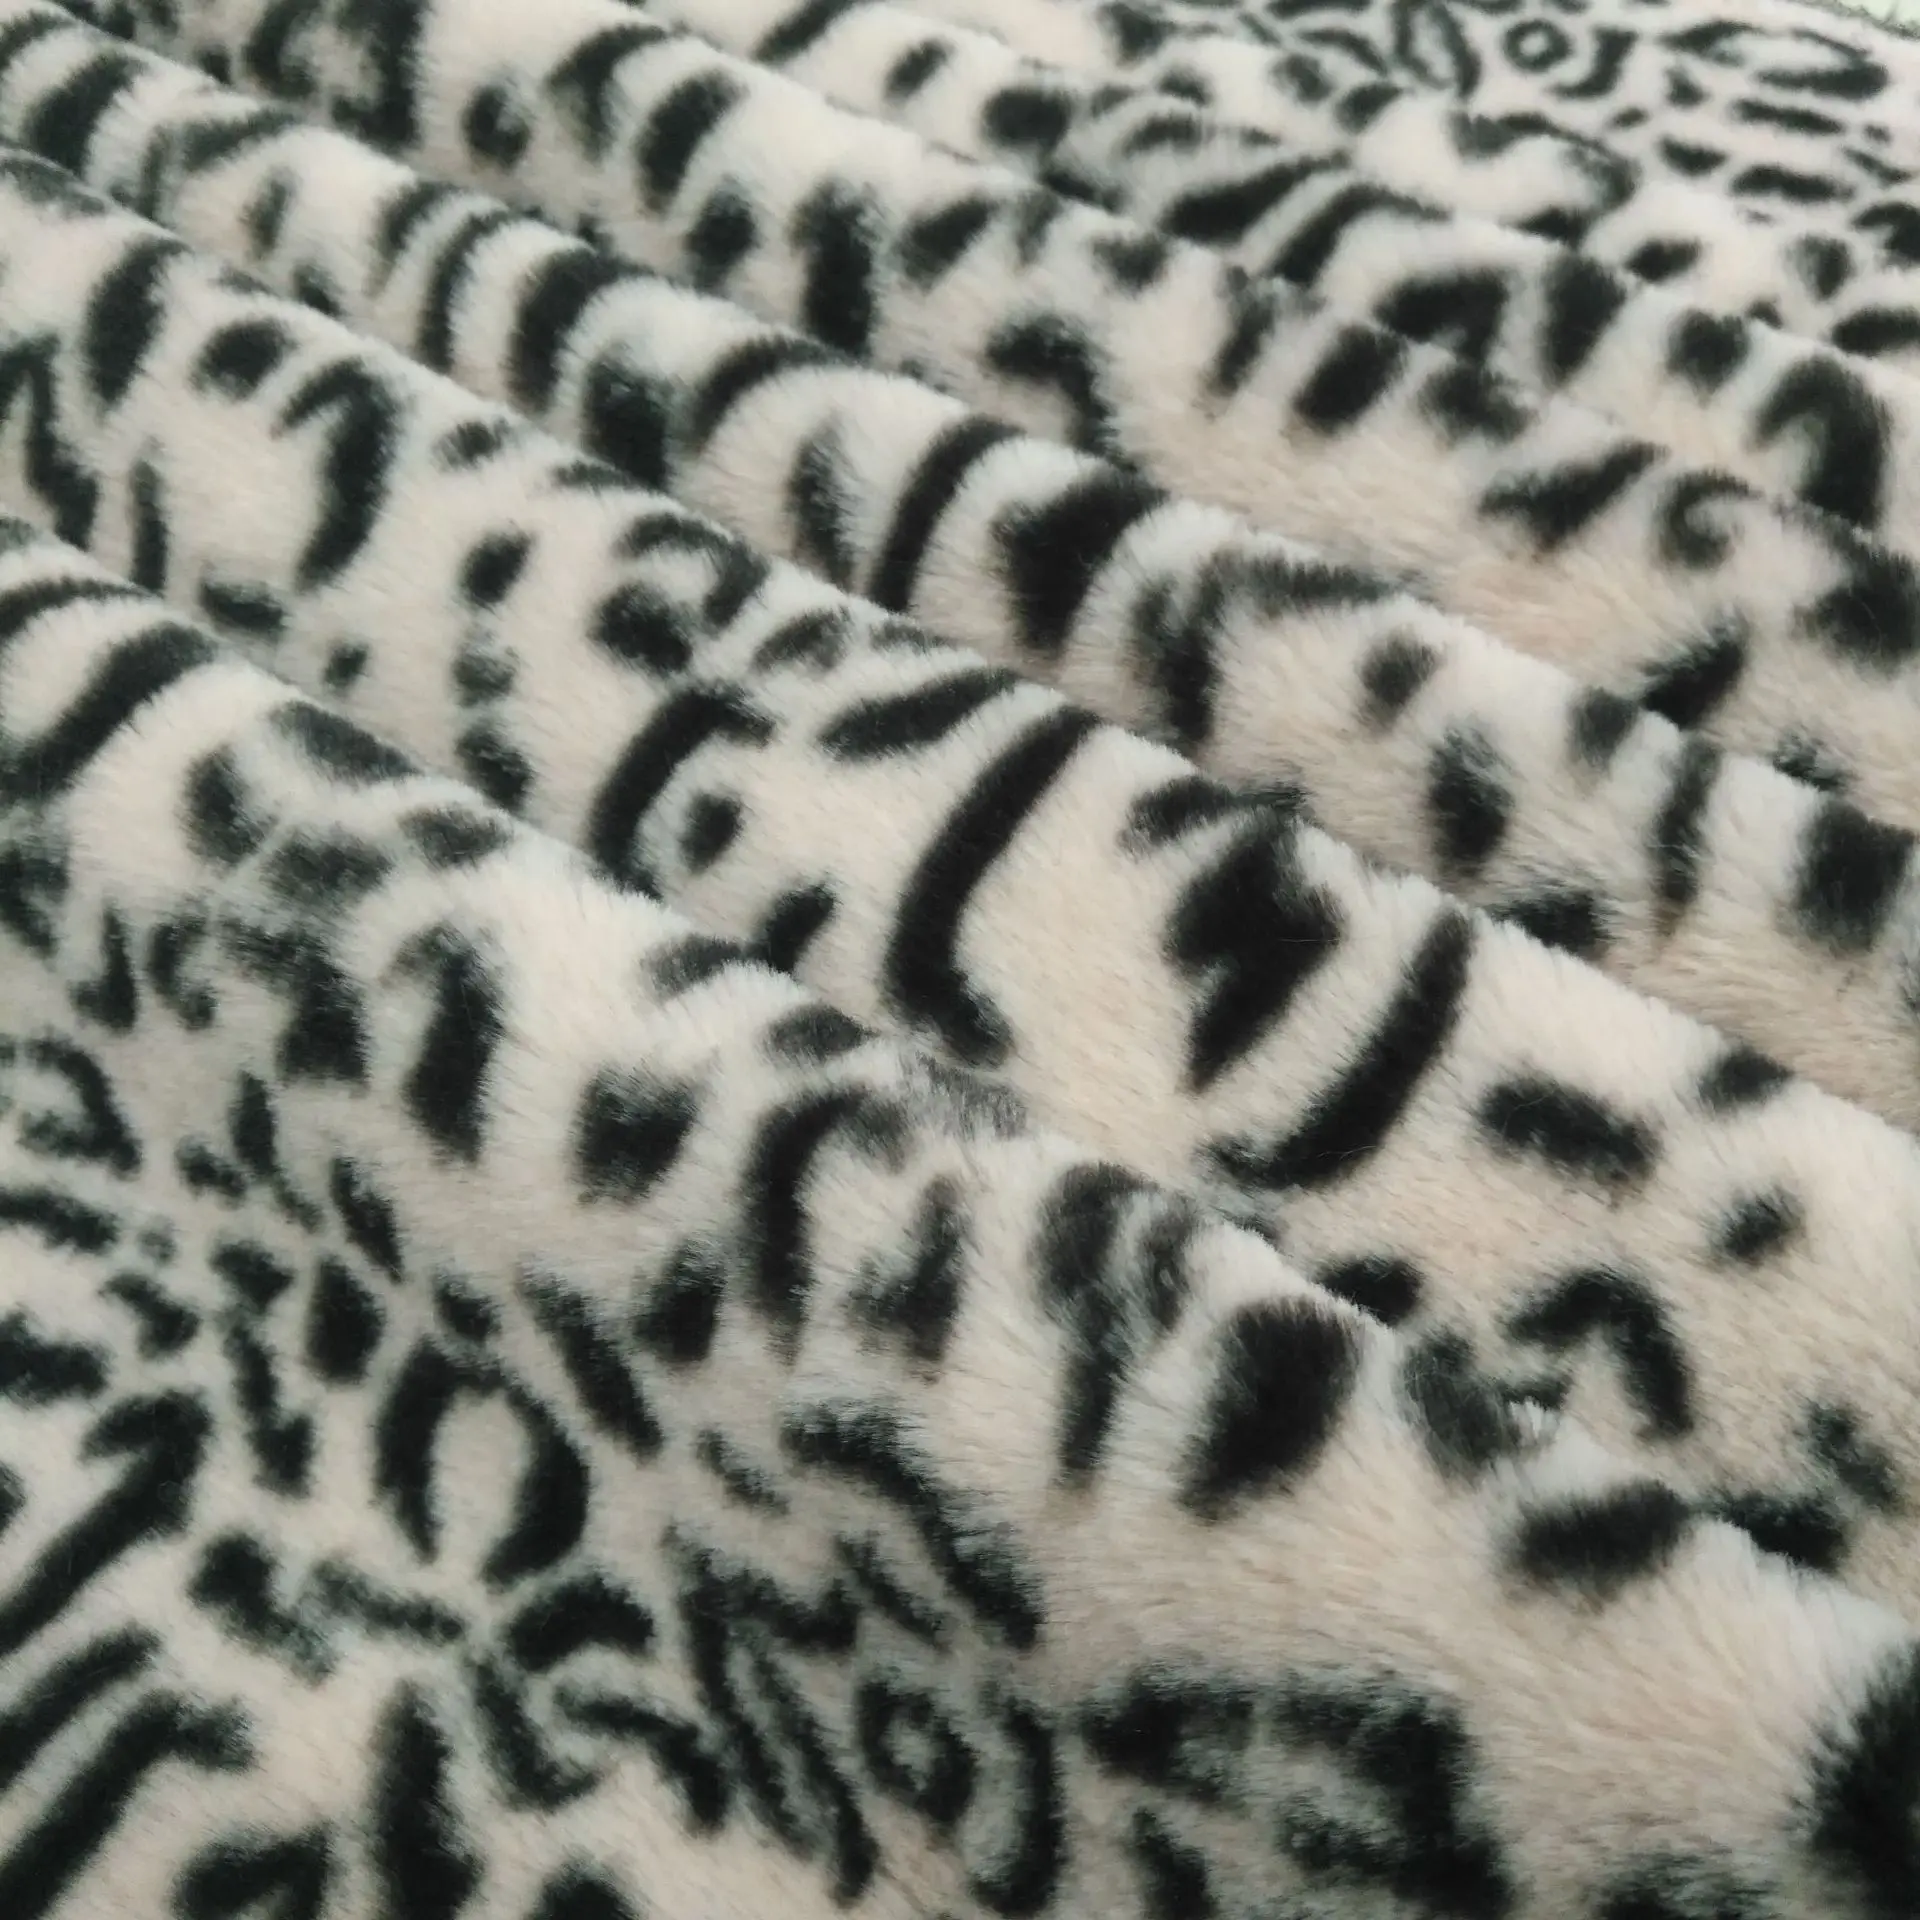 Кроличий принт волос Леопардовый принт 10 мм кольцо Леопард кроличья шерсть печать ткань одежда сумка материал обуви